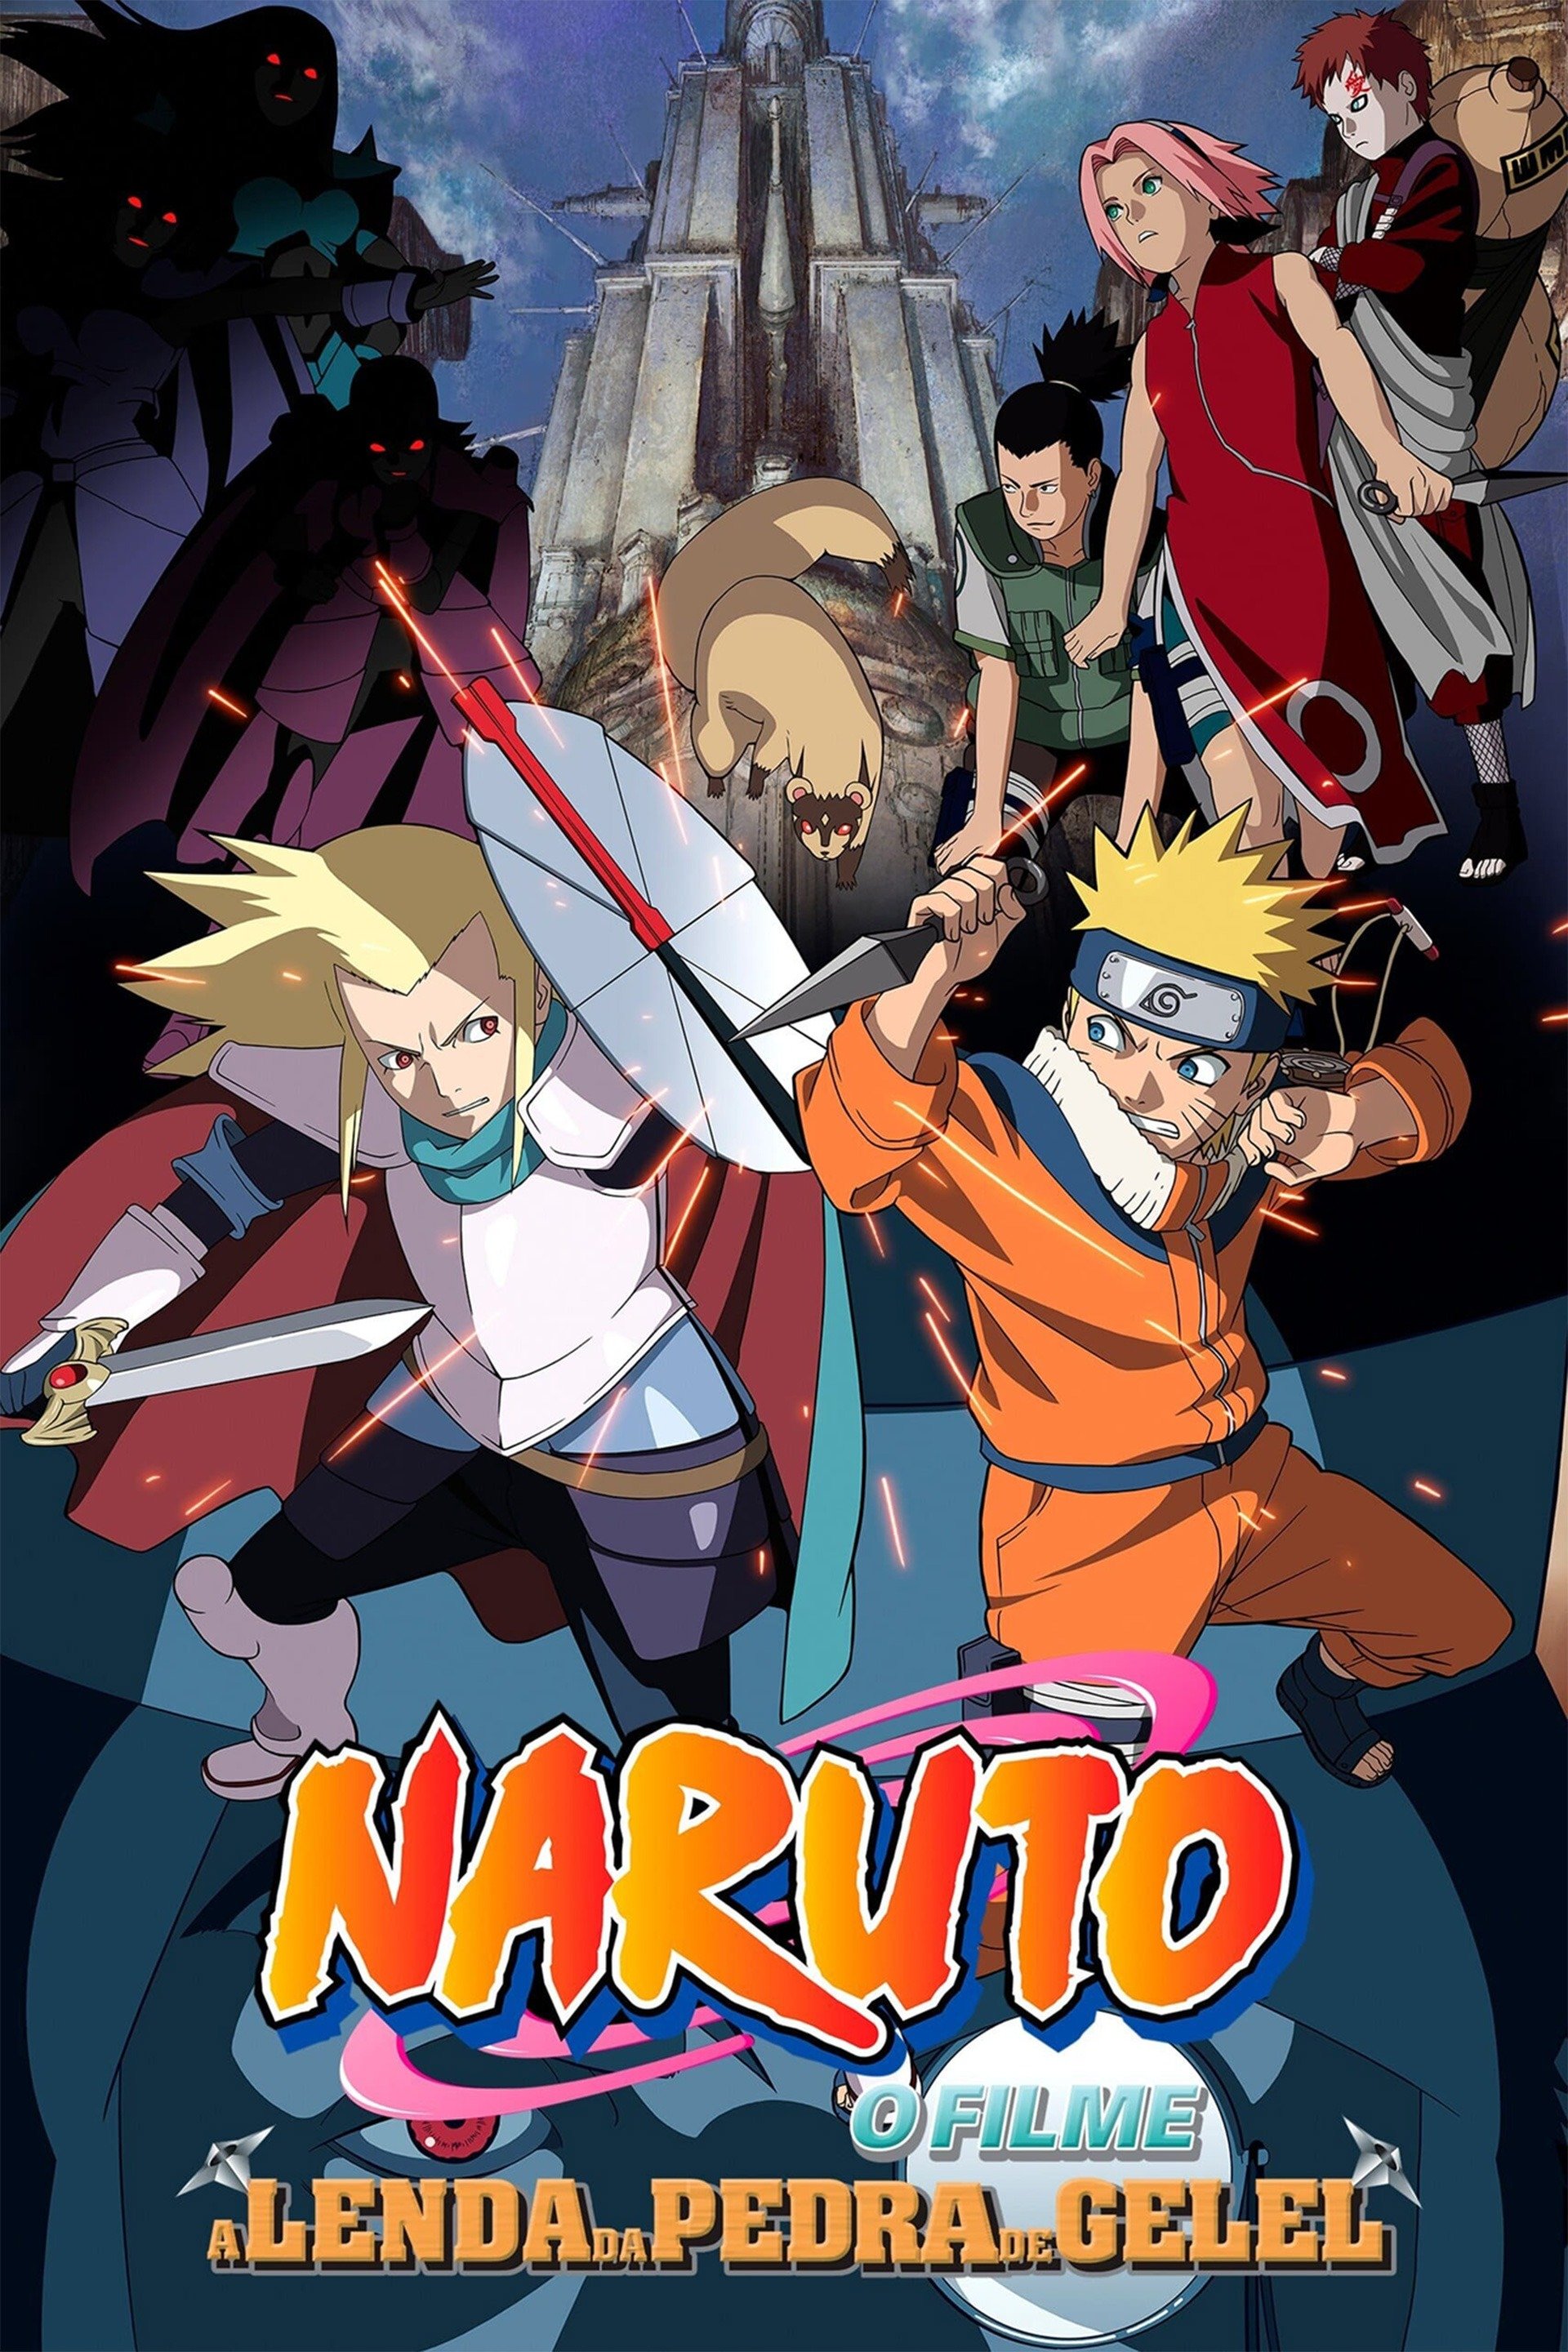 MagiCinema - Filmes, Séries e Entretenimento!: CONFIRMADO! Naruto vai  ganhar uma série e um novo filme